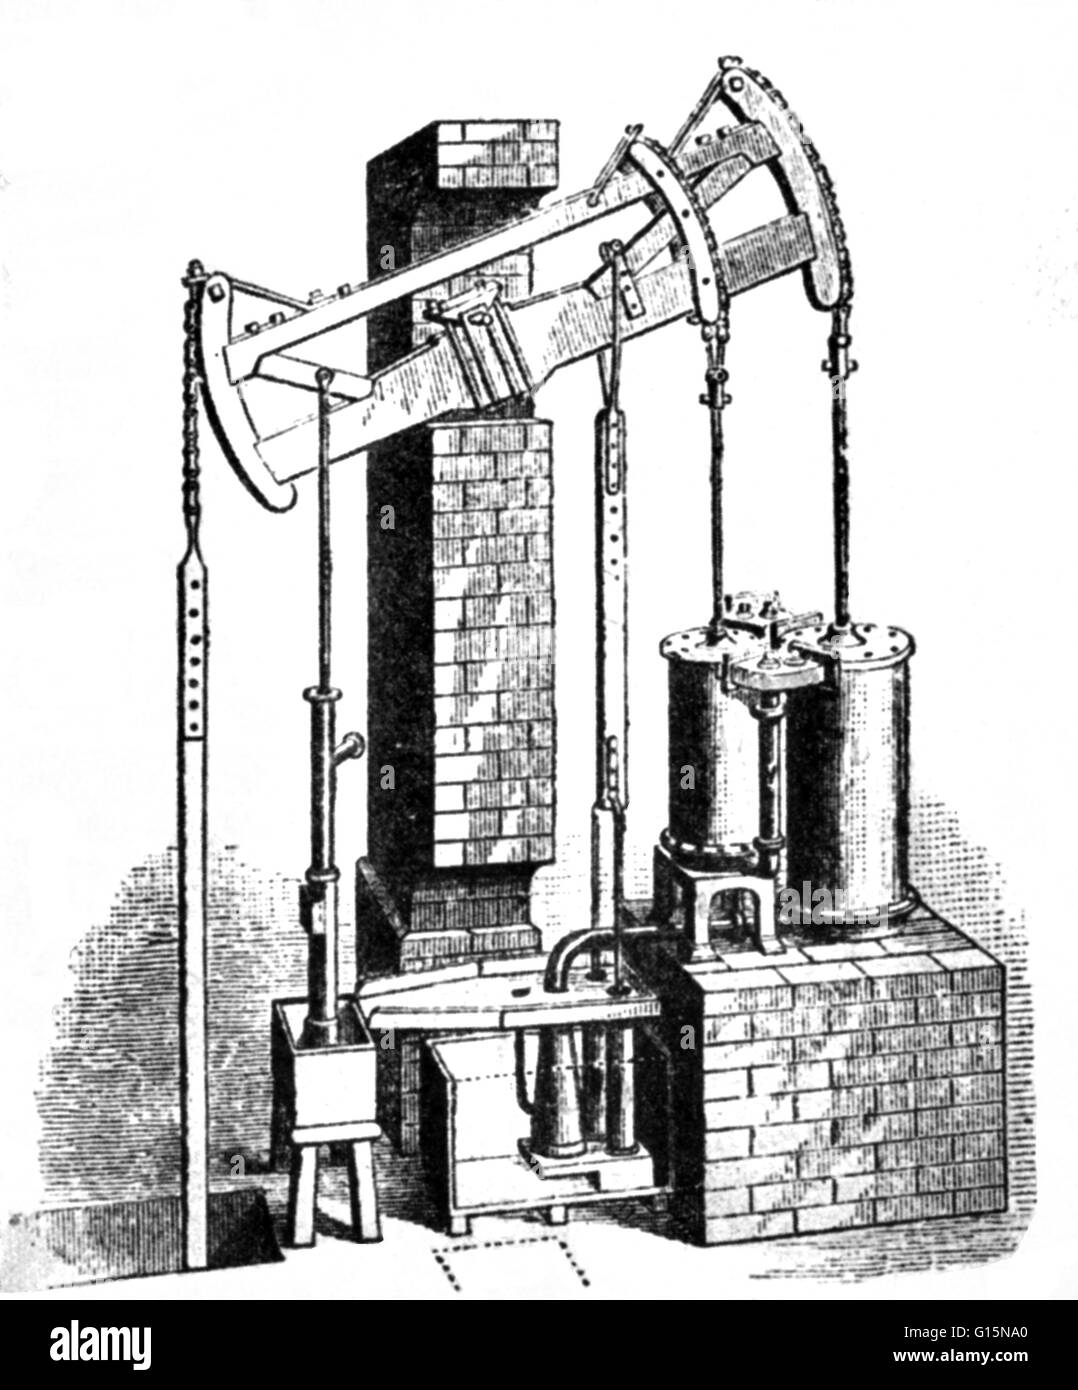 Jonathan Hornblower (Luglio 5, 1753 - 23 febbraio 1815) è stato un pioniere britannico di potenza vapore. Ha brevettato a doppio cilindro composto una trave a moto alternativo motore nel 1781. Egli è stato impedito di sviluppare ulteriormente da James Watt, che ha rivendicato la propria brevetti w Foto Stock